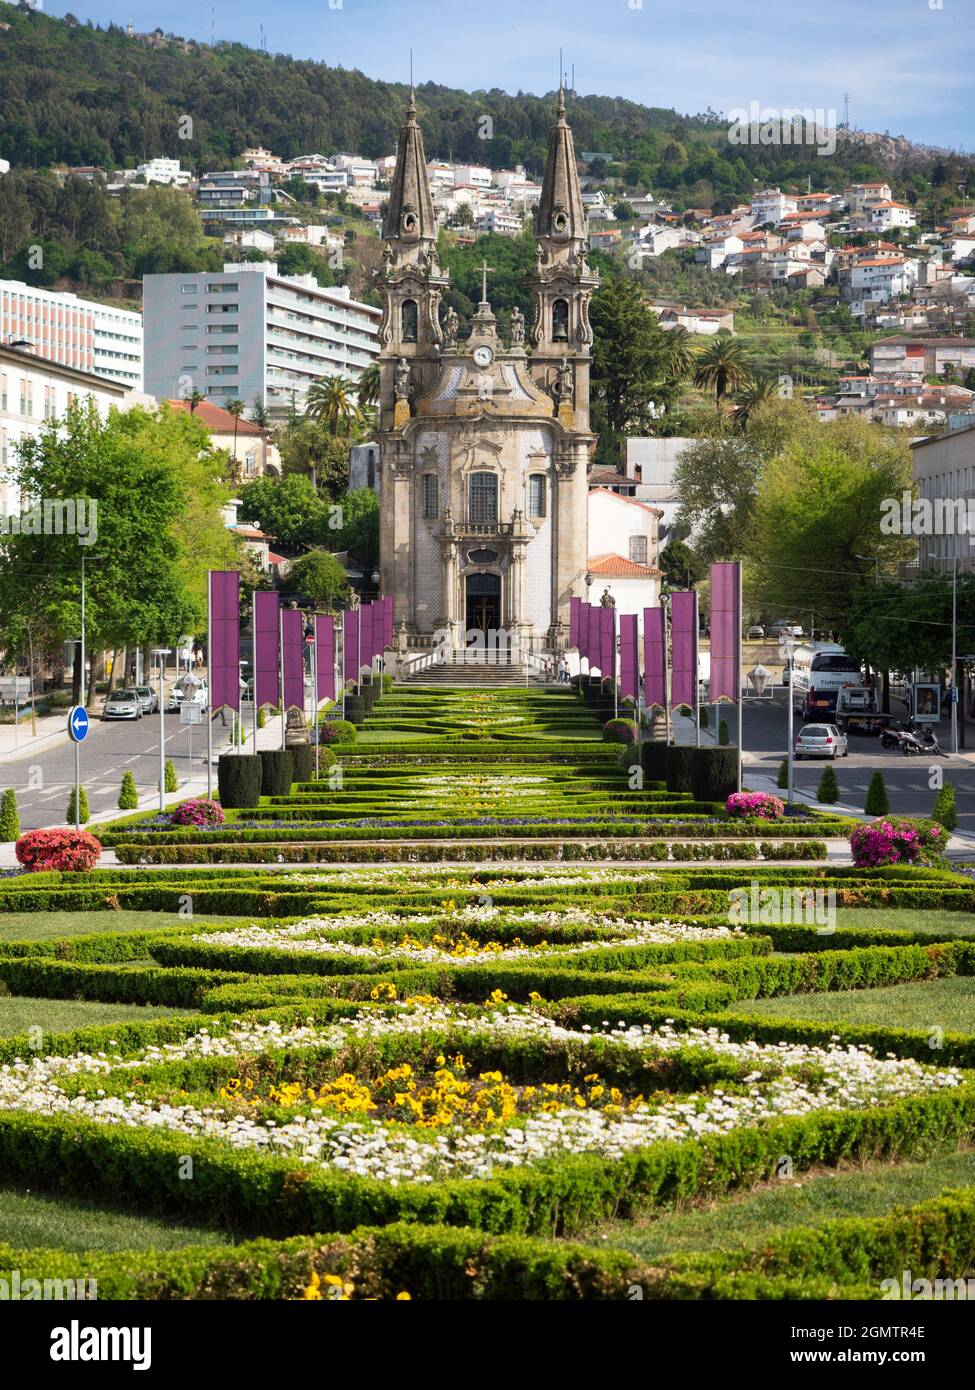 Guimar è una graziosa città e comune situata nel Portogallo settentrionale, nel distretto di Braga, nella Valle del Douro. Il suo centro storico, un noi Foto Stock